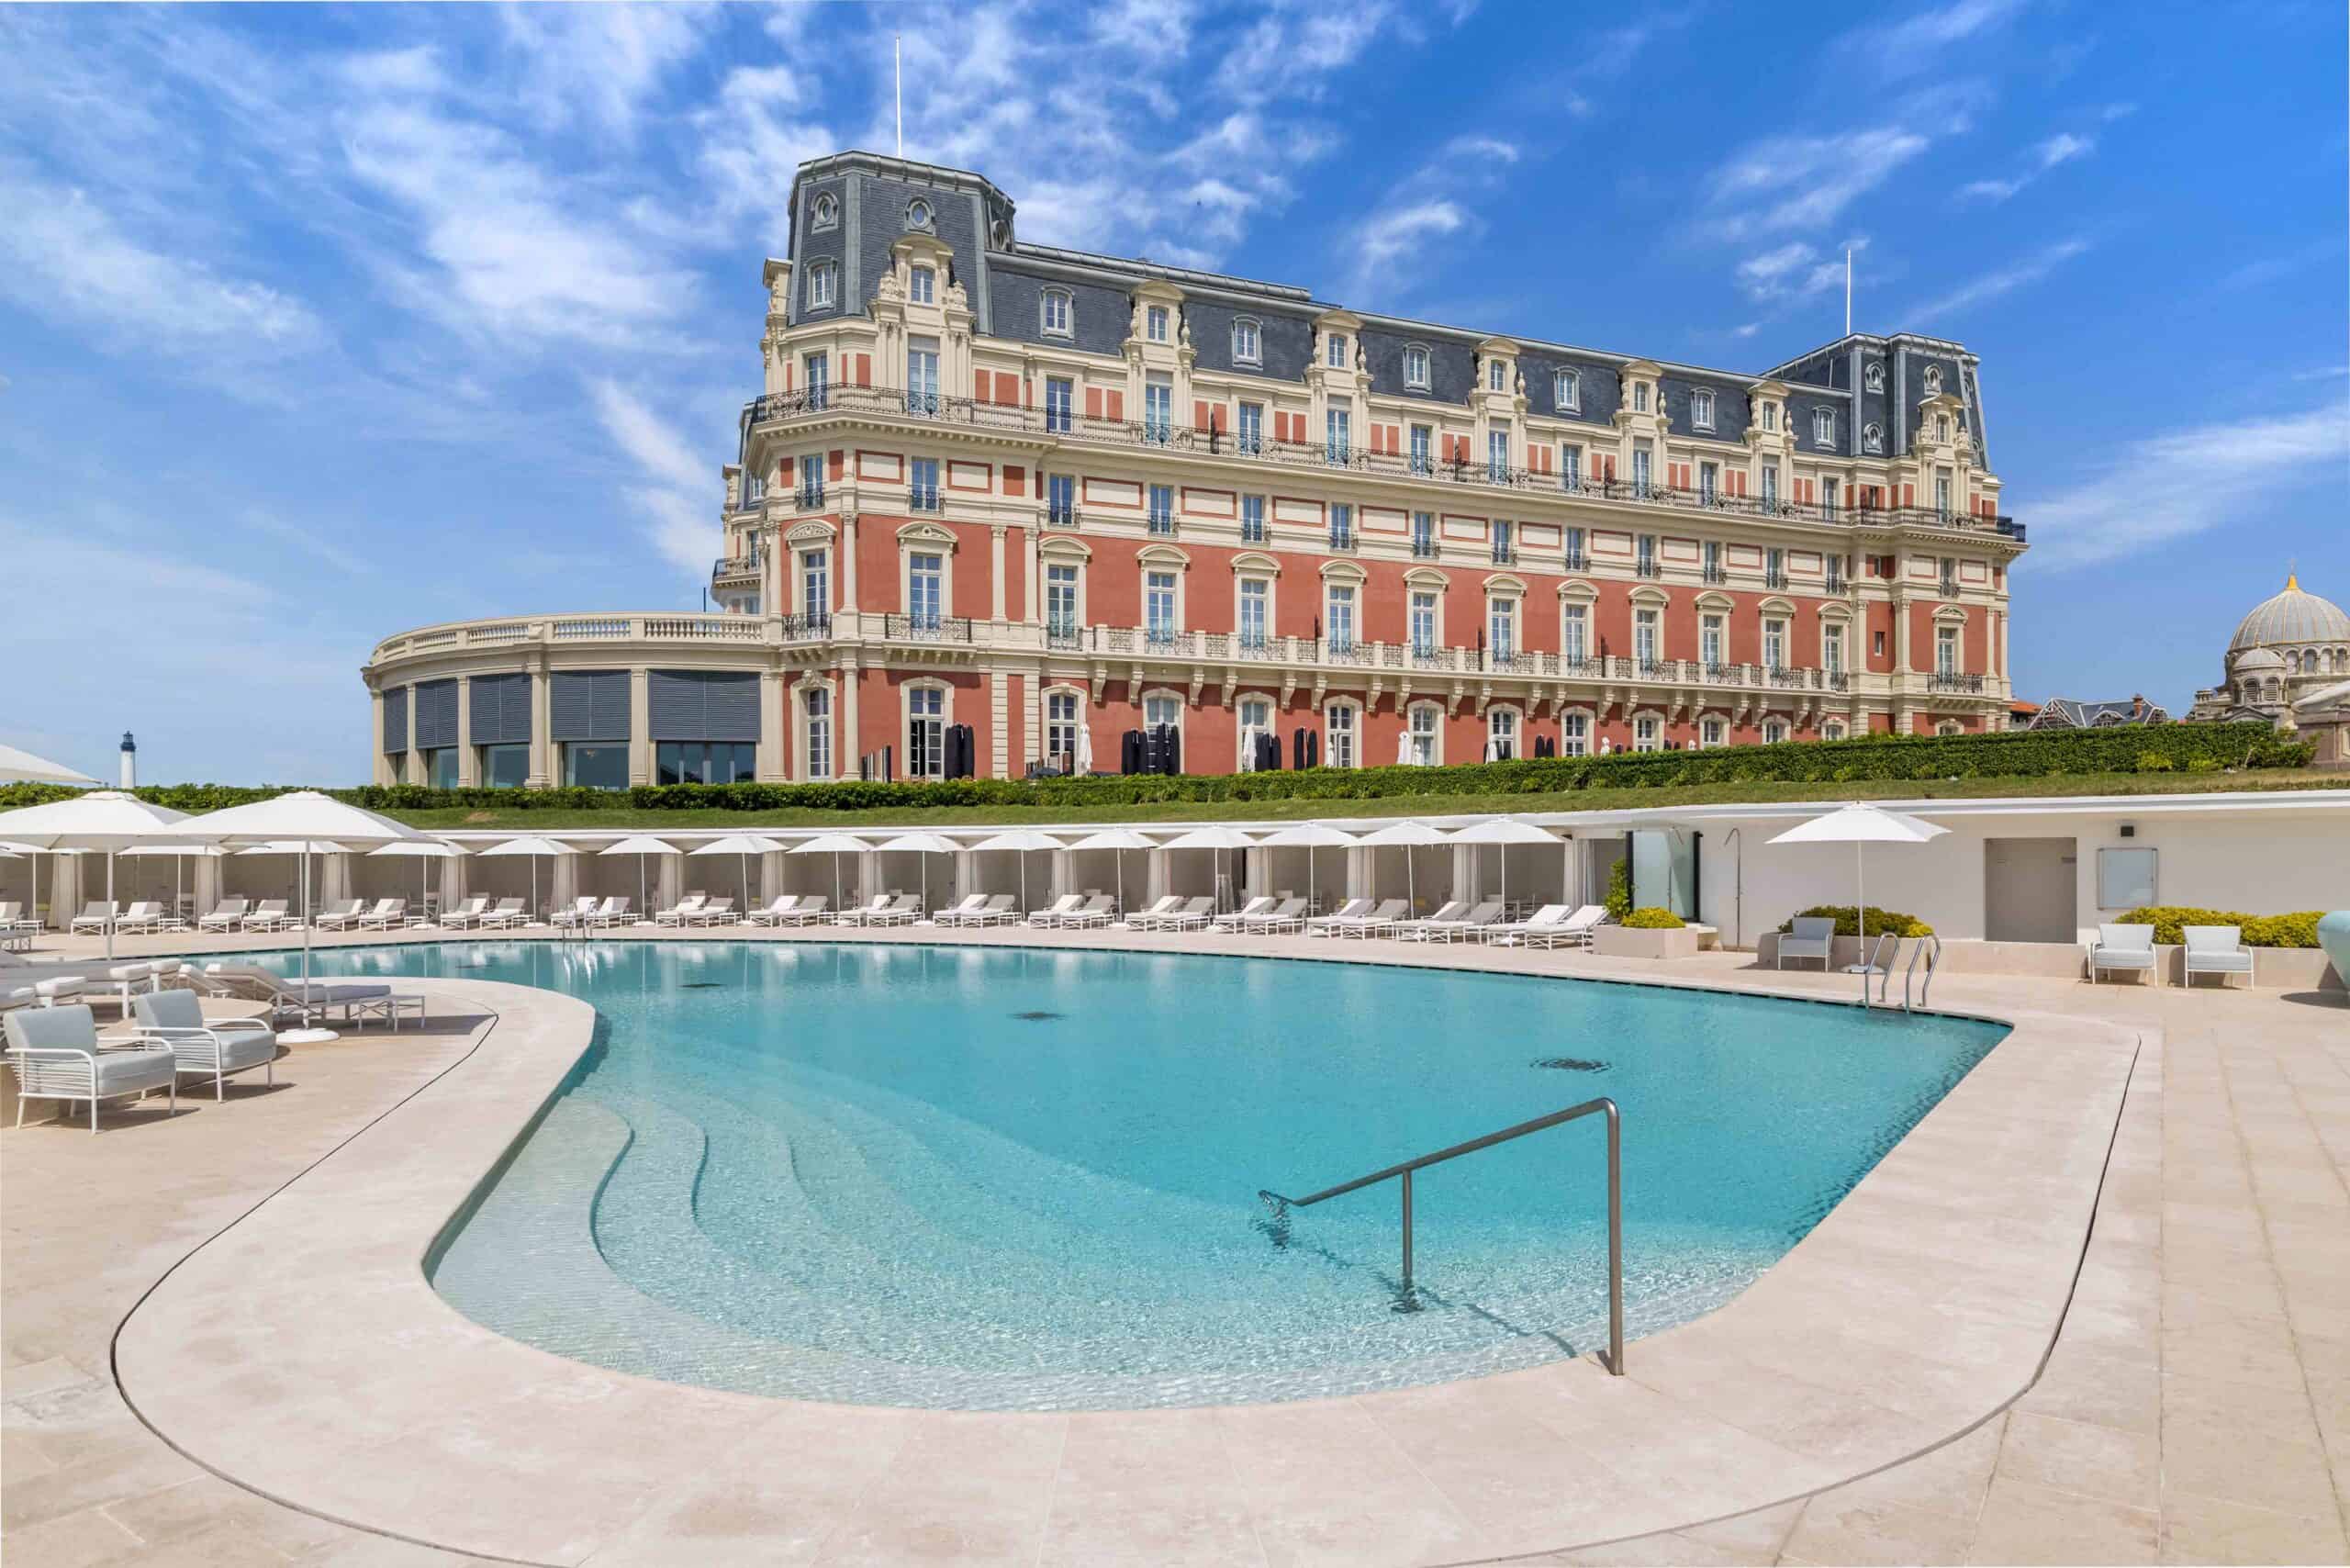 Hotel of the month: Hôtel Du Palais Biarritz